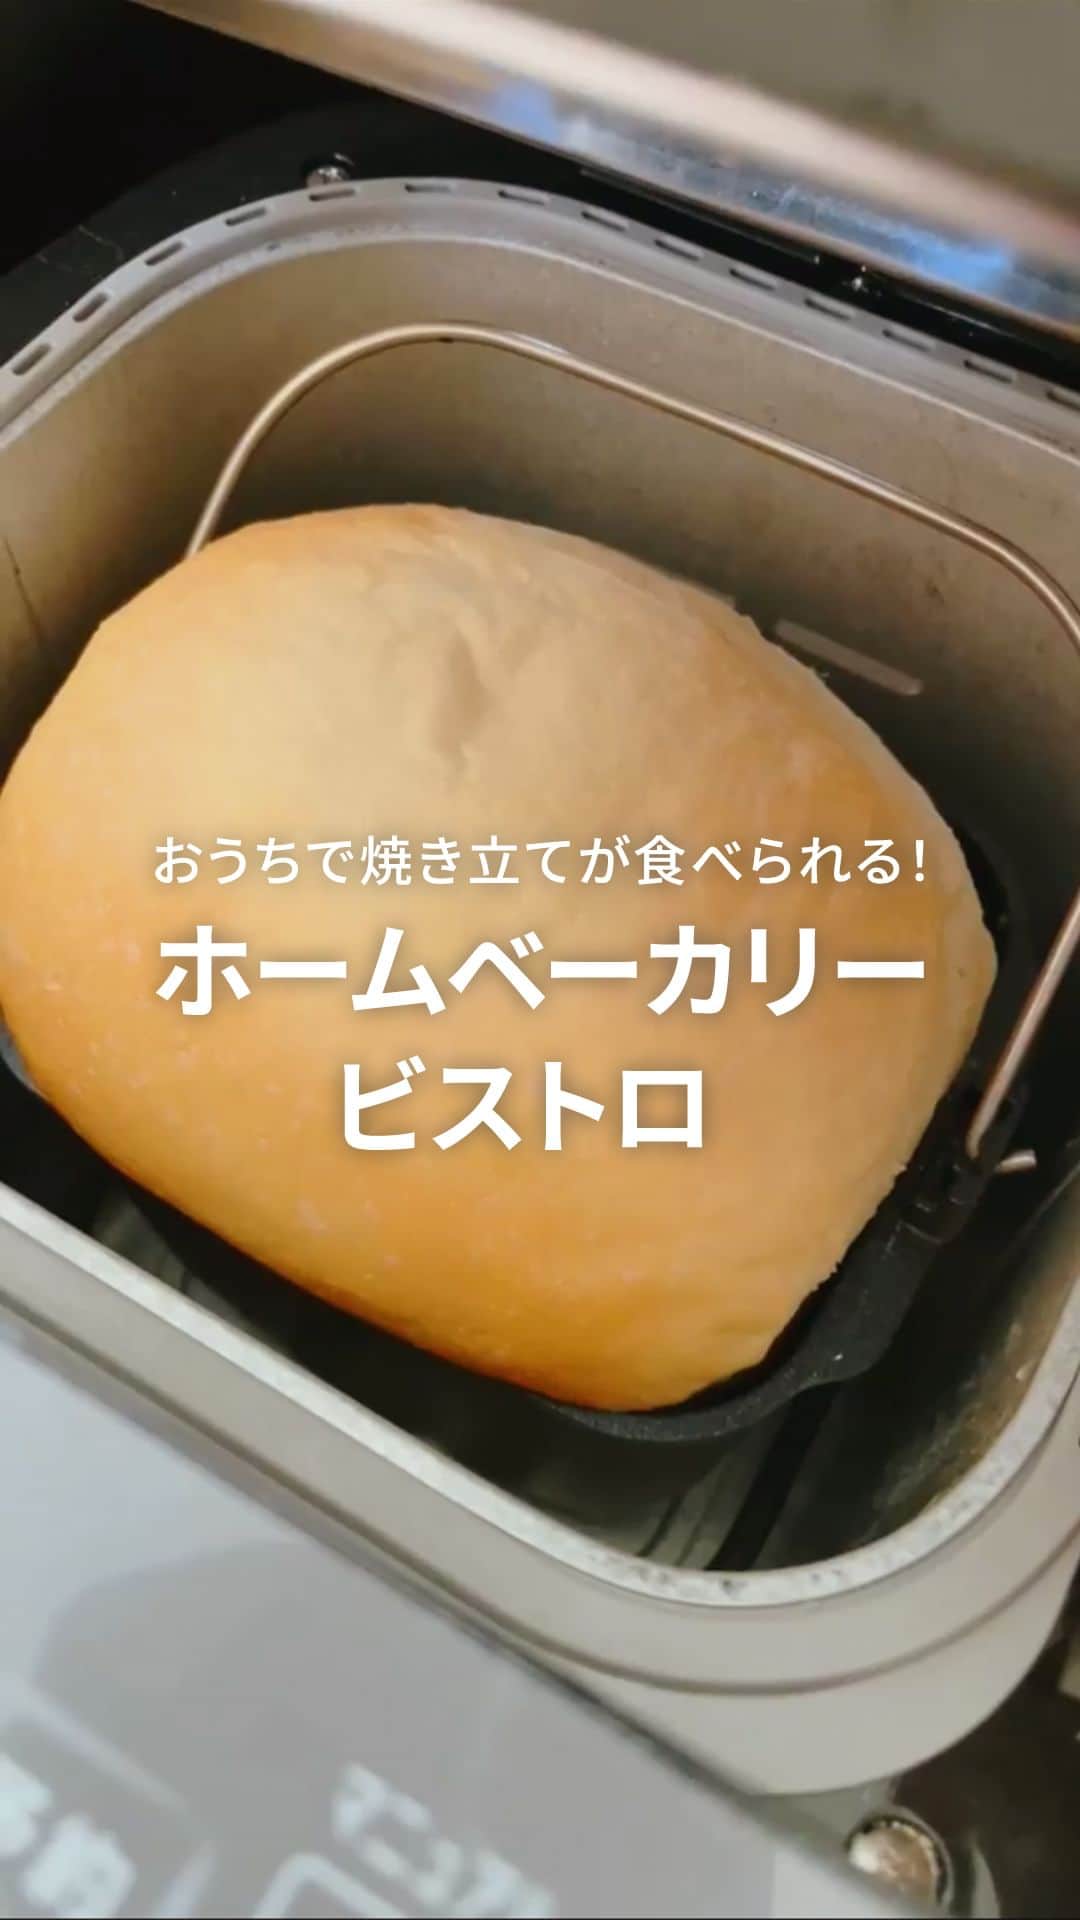 Panasonic ふだんプレミアムのインスタグラム：「パンが食べたくなった方は🍞の絵文字で教えてください♪  【レビュー紹介💡ホームベーカリー ビストロ】  おうちで焼き立てのパンが食べられる ホームベーカリー ビストロをご紹介✨  プロの技法を取り入れた「3D匠ねり」と 1年中安定したおいしさ「Wセンシング発行」がおいしく焼きあがる秘密。  @yuu.2828 さま、投稿ありがとうございました！ これからもおいしいパンをお楽しみください✨  ※@yuu.2828 さまオリジナルレシピ ※メーカー推奨レシピはWEBサイトをご覧ください  ‐‐‐‐‐‐‐‐‐‐‐‐‐‐‐‐‐‐‐‐‐  #ホームベーカリービストロ #ホームベーカリー #ホームベーカリーレシピ #ホームベーカリー初心者 #ホームベーカリーで手作りパン #ホームベーカリー食パン #食パンレシピ #生食パン #おうち乃が美 #panasonicホームベーカリー #パナソニックビストロ #パナソニックホームベーカリー #ミルク食パン #ミルクパン #時短家電#暮らしを便利に #暮らしを整える #パナソニック #Panasonic #パナソニックと暮らす」